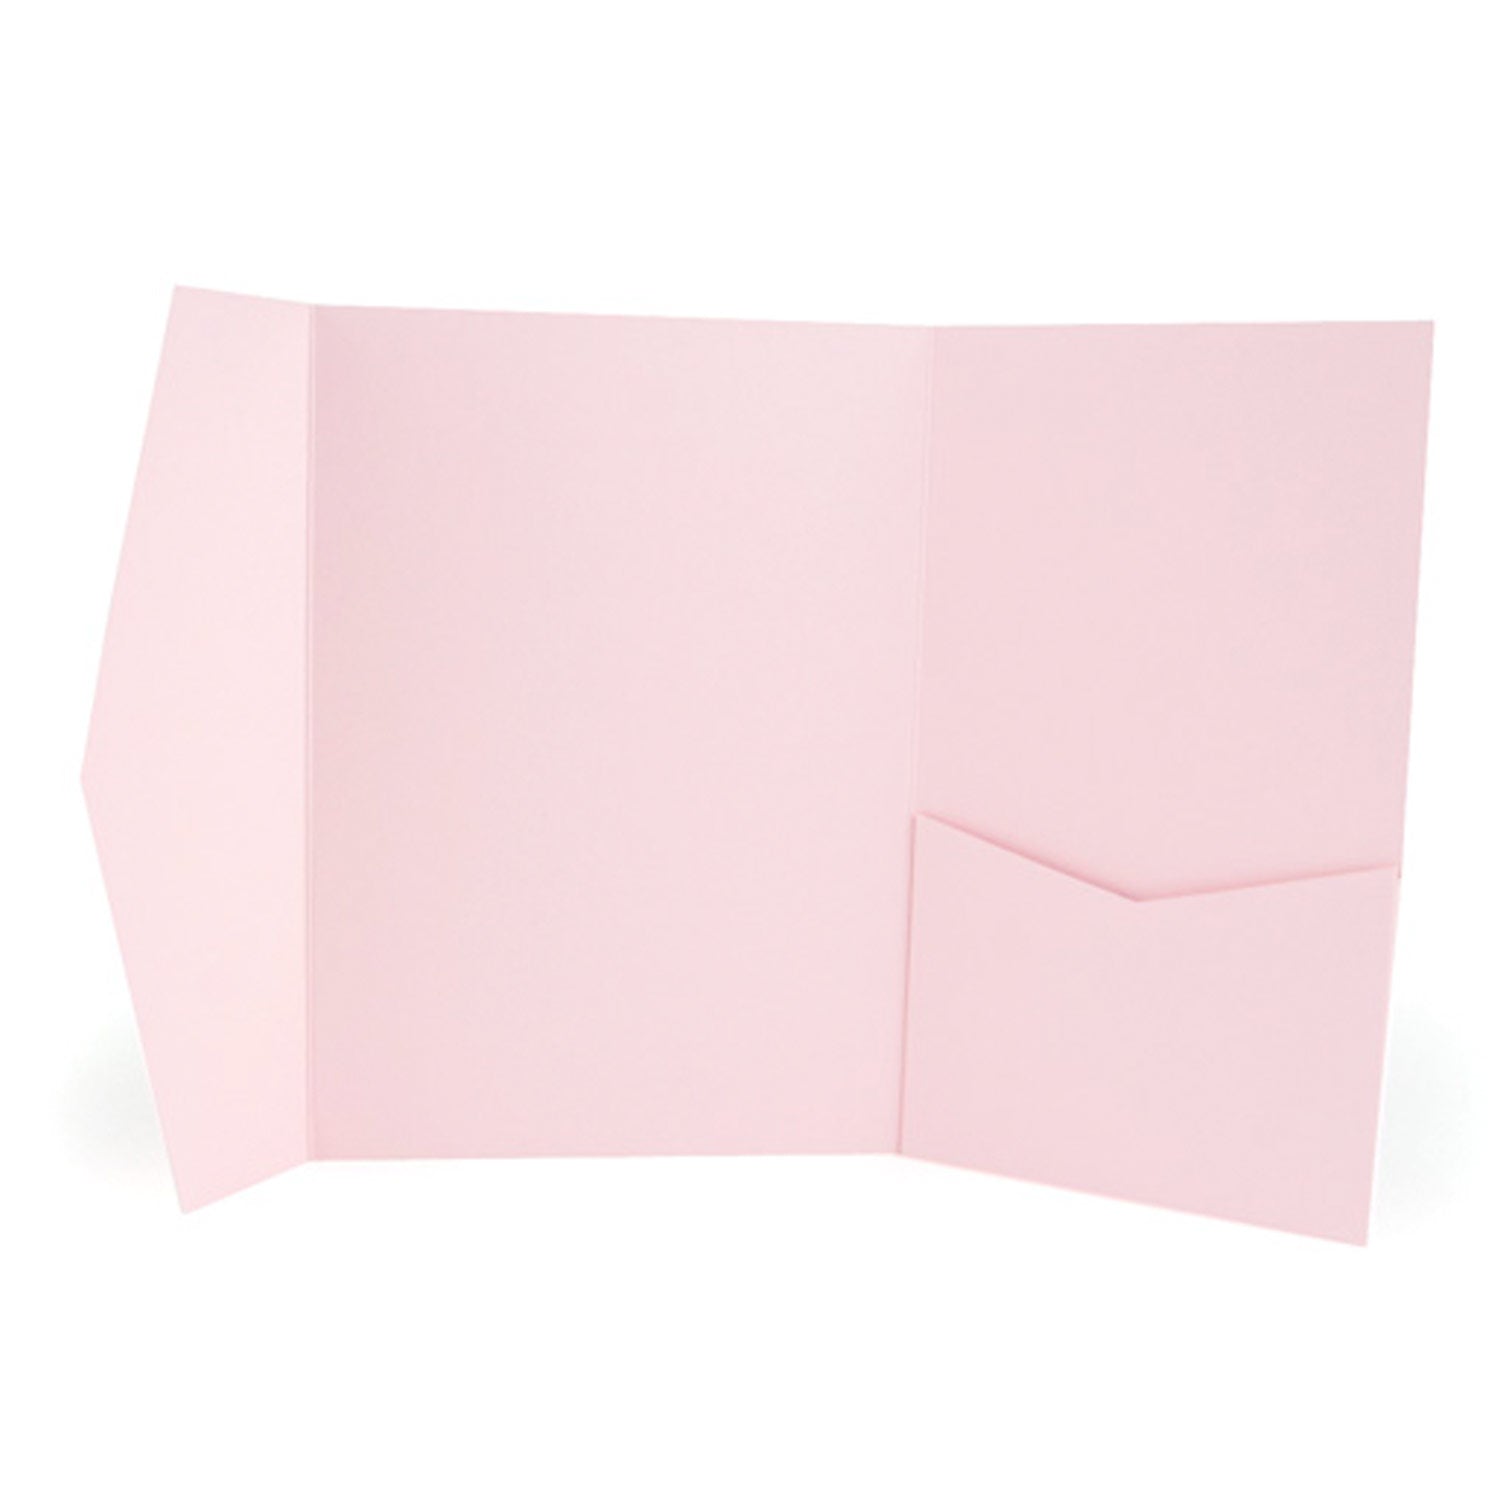 Pocket Wallet Fold Invitation Holder DIY Wedding Supplies Pink